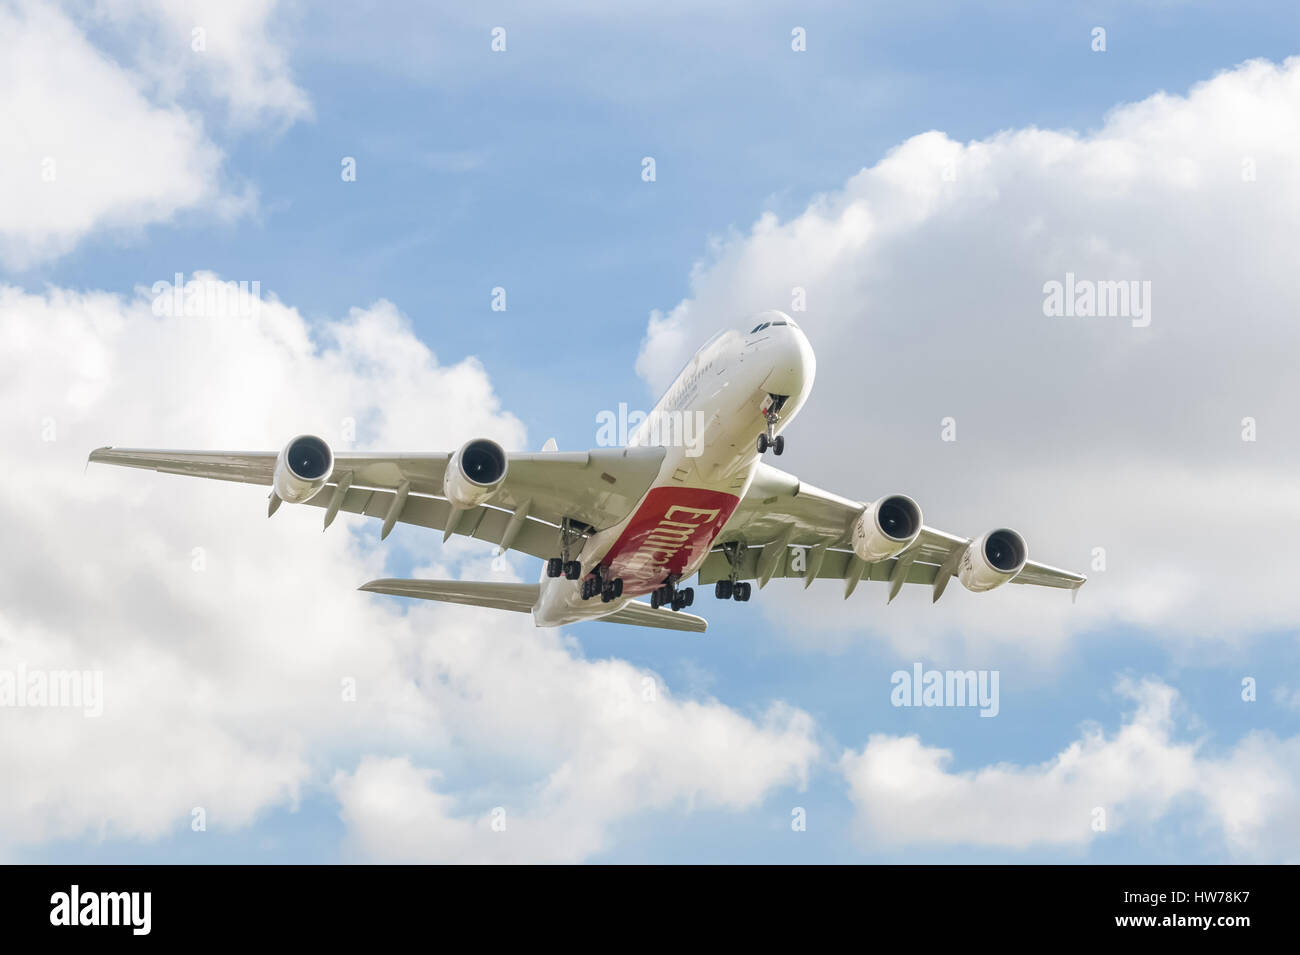 Betrieben von (v.a.e.) Emirates Airlines, ein Airbus A380 auf der Zielseite Ansatz nach London Heathrow Airport, Großbritannien Stockfoto